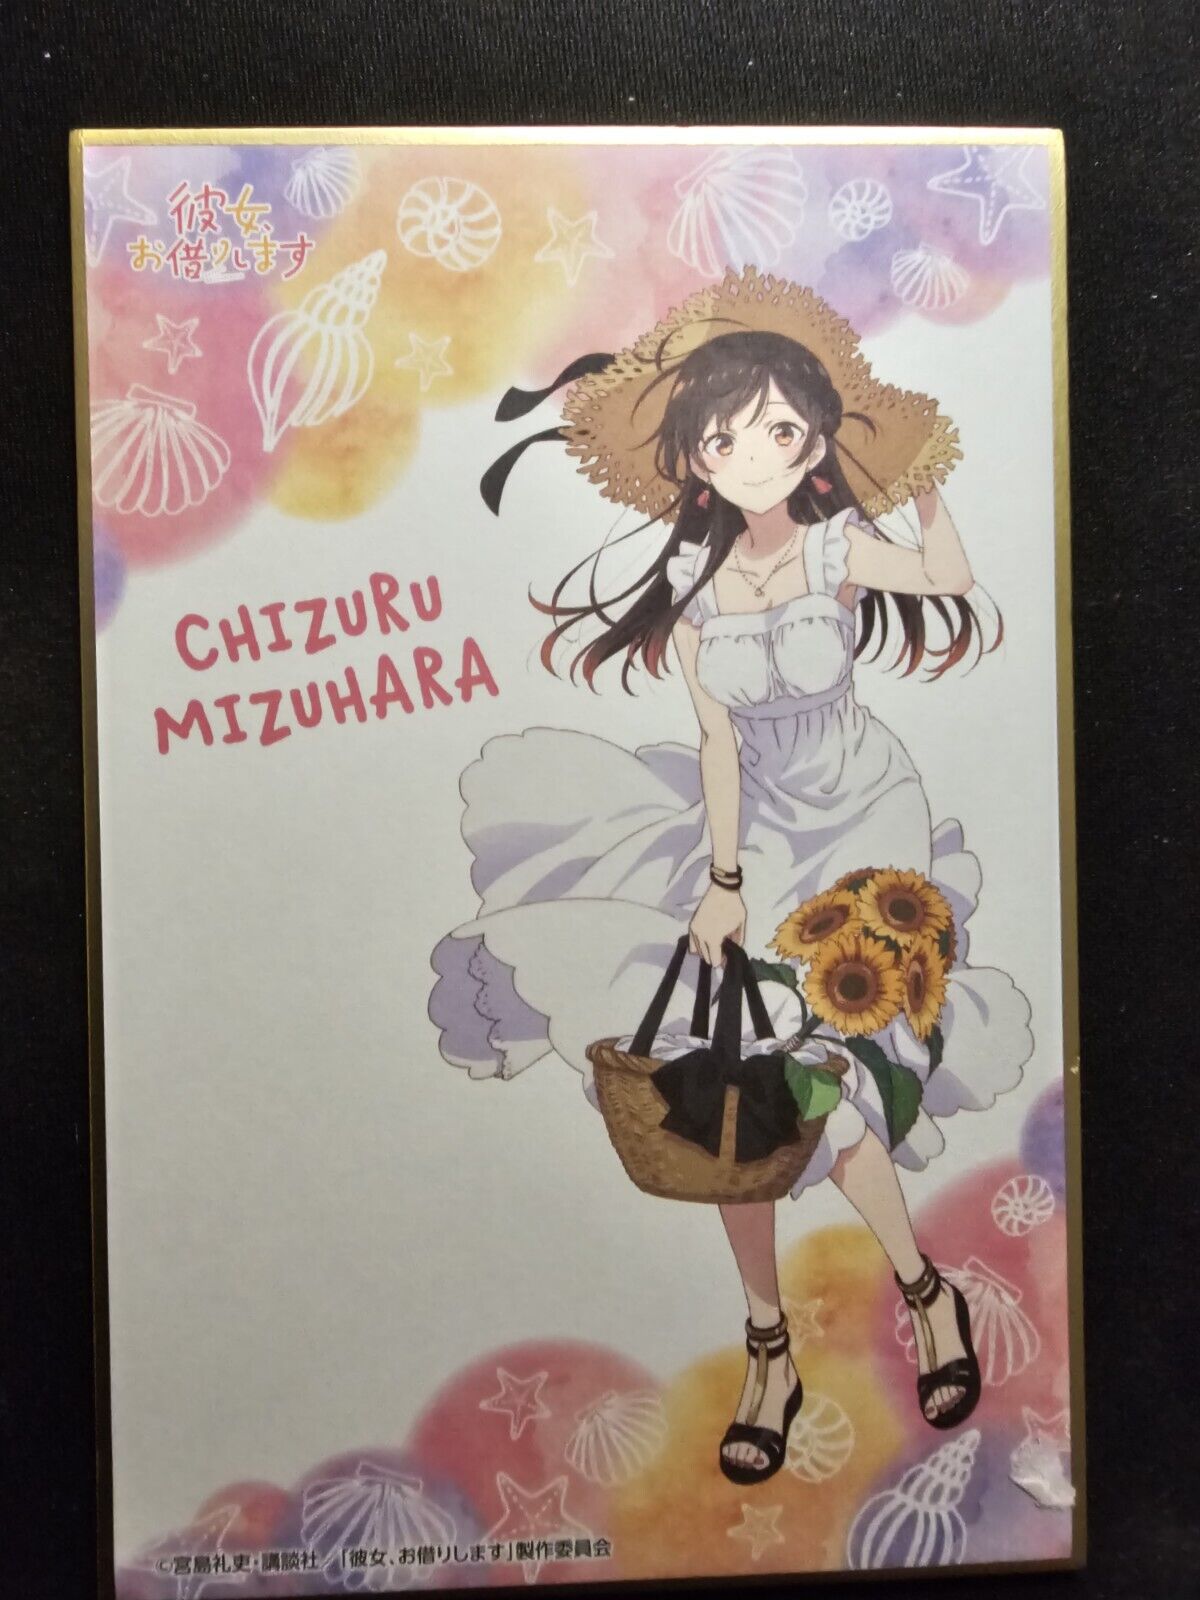 Rent a Girlfriend  Chizuru Mizuhara Shikishi